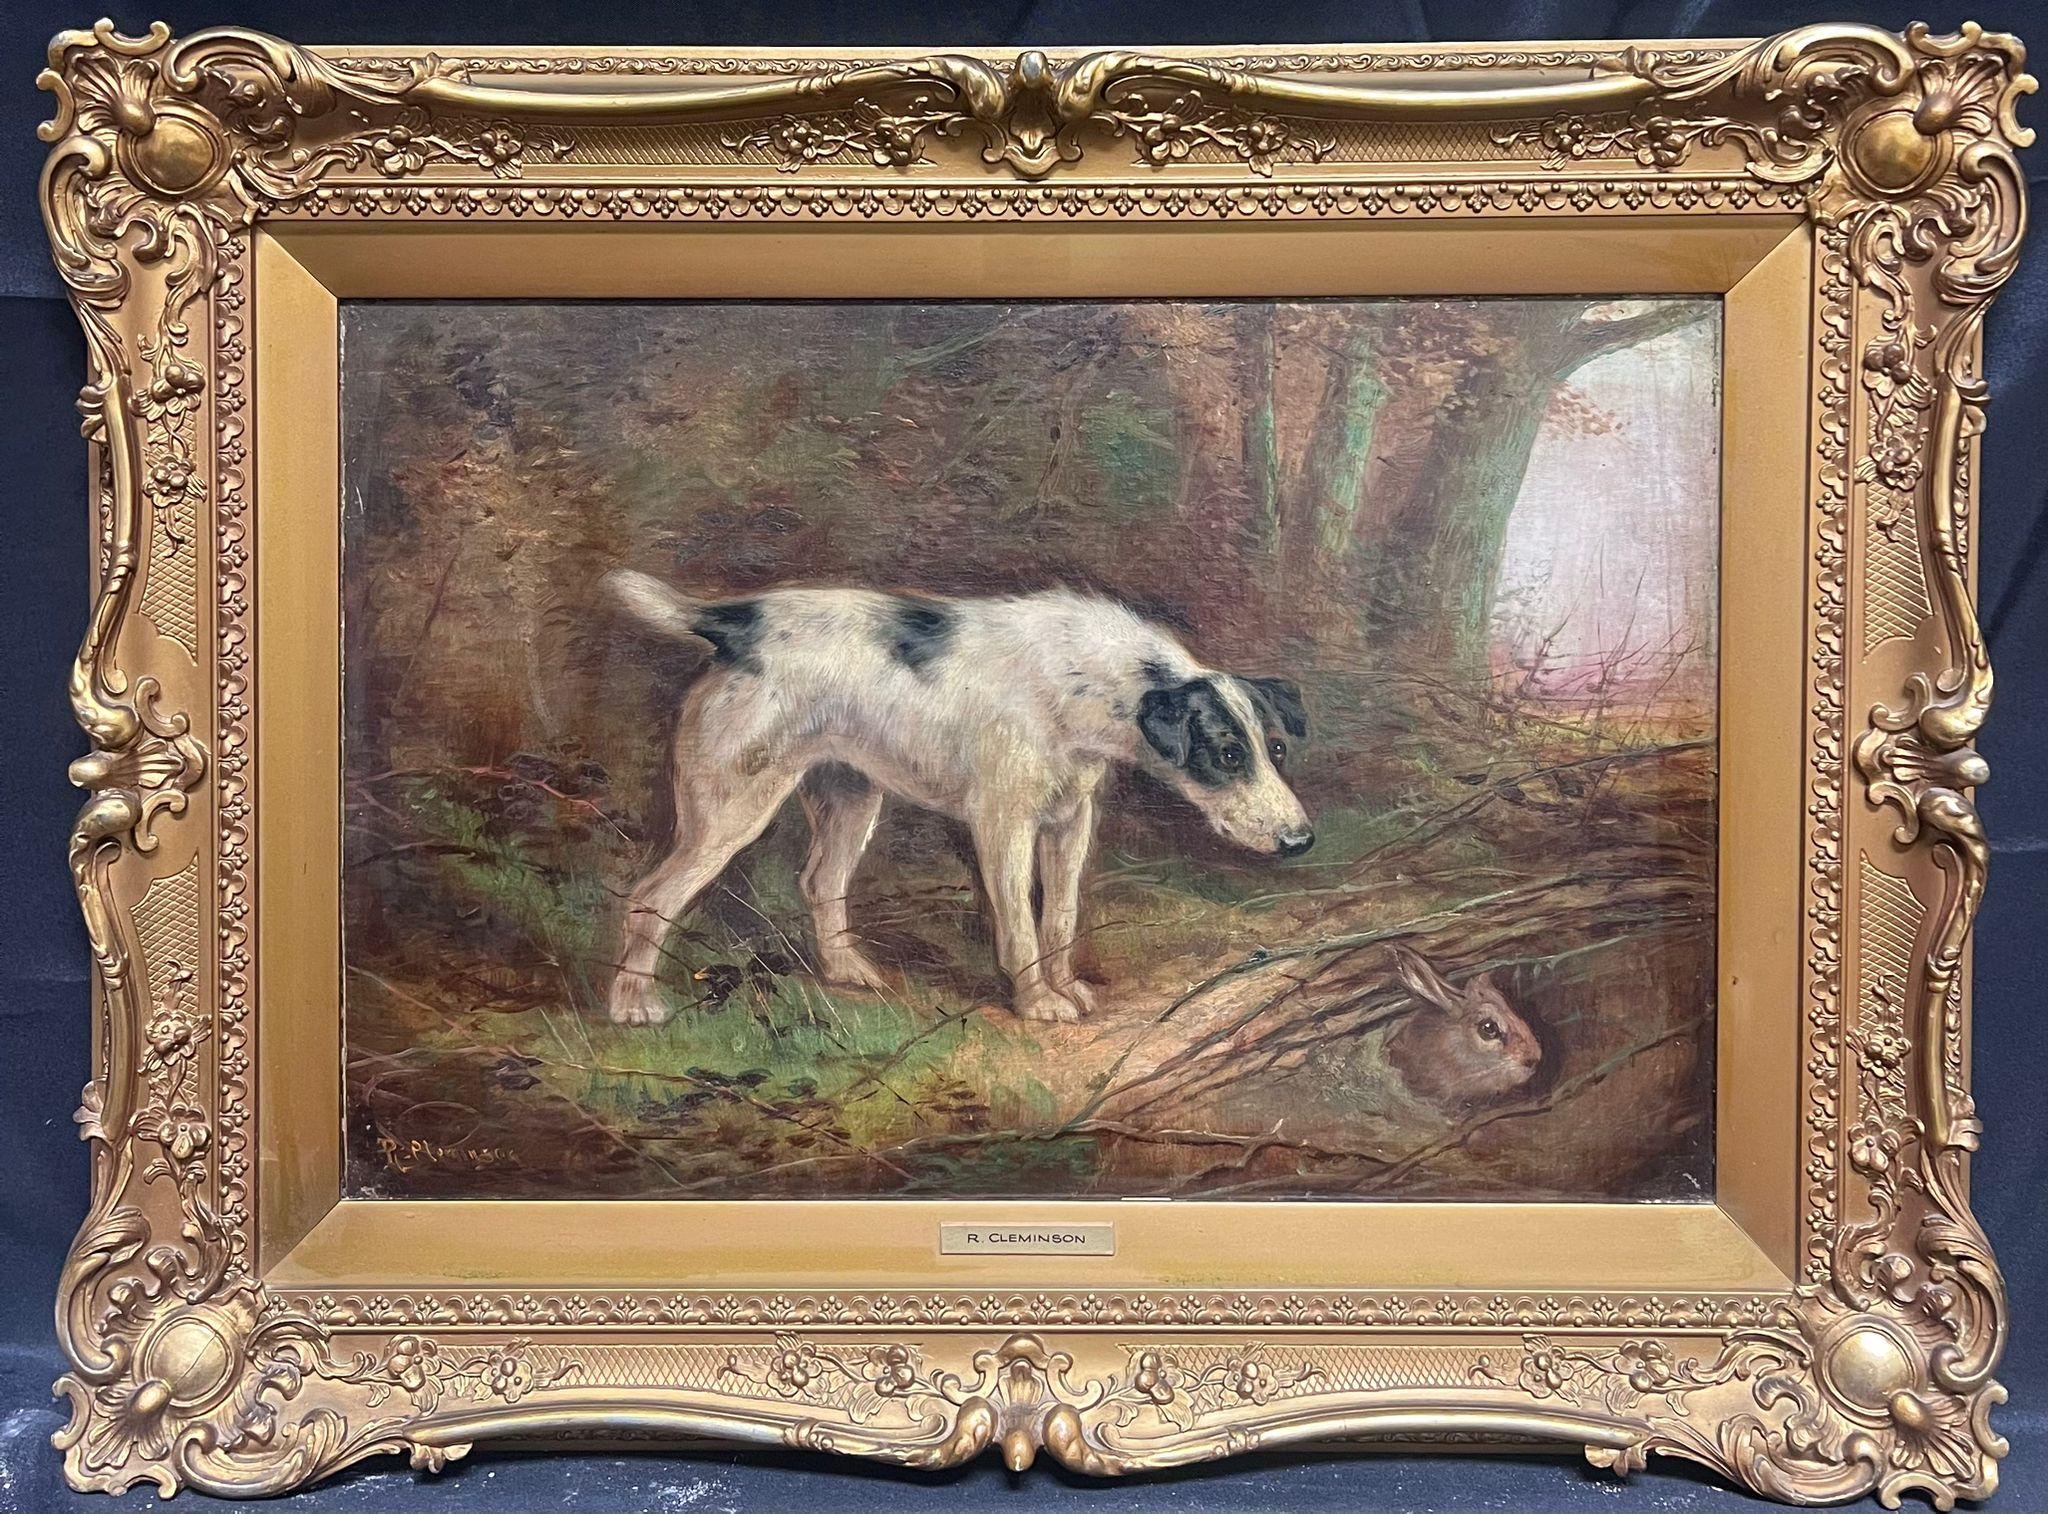 Animal Painting Robert Cleminson - Peinture à l'huile victorienne signée Terrier Dog Chasing Rabbit down Hole Gilt encadrée